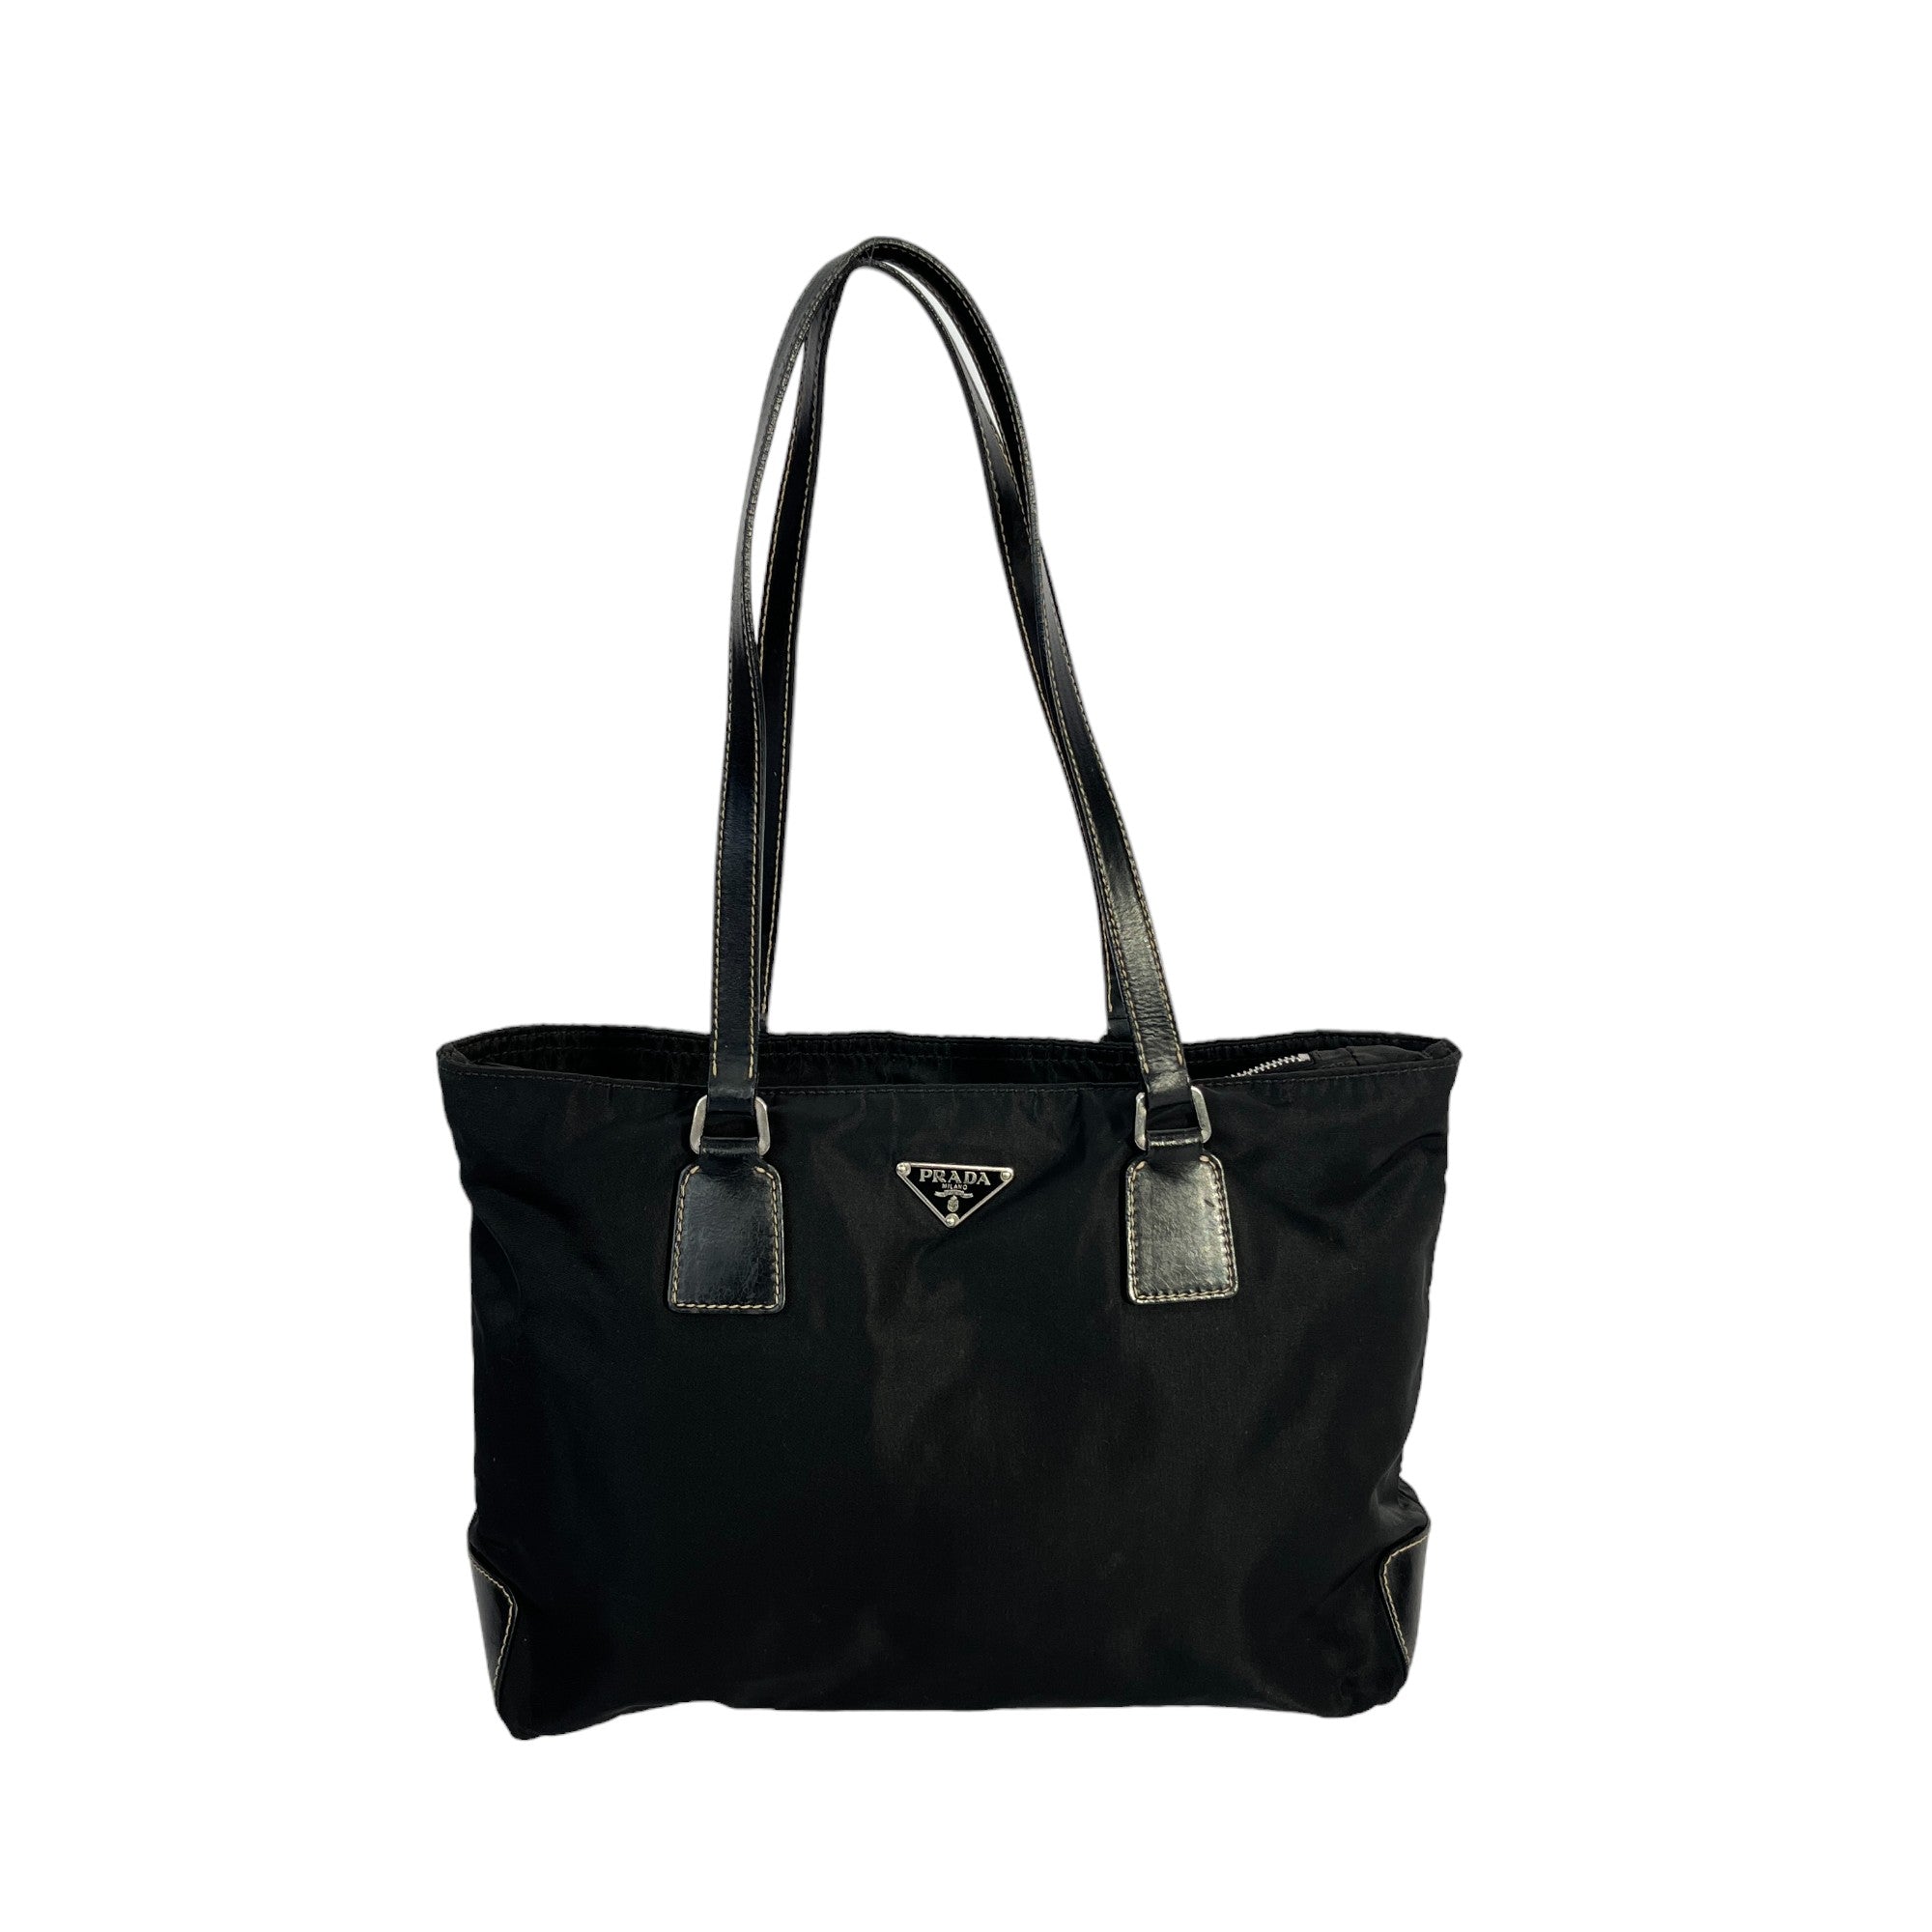 Prada Handtasche / Shopper aus Nylon mittelgroß schwarz